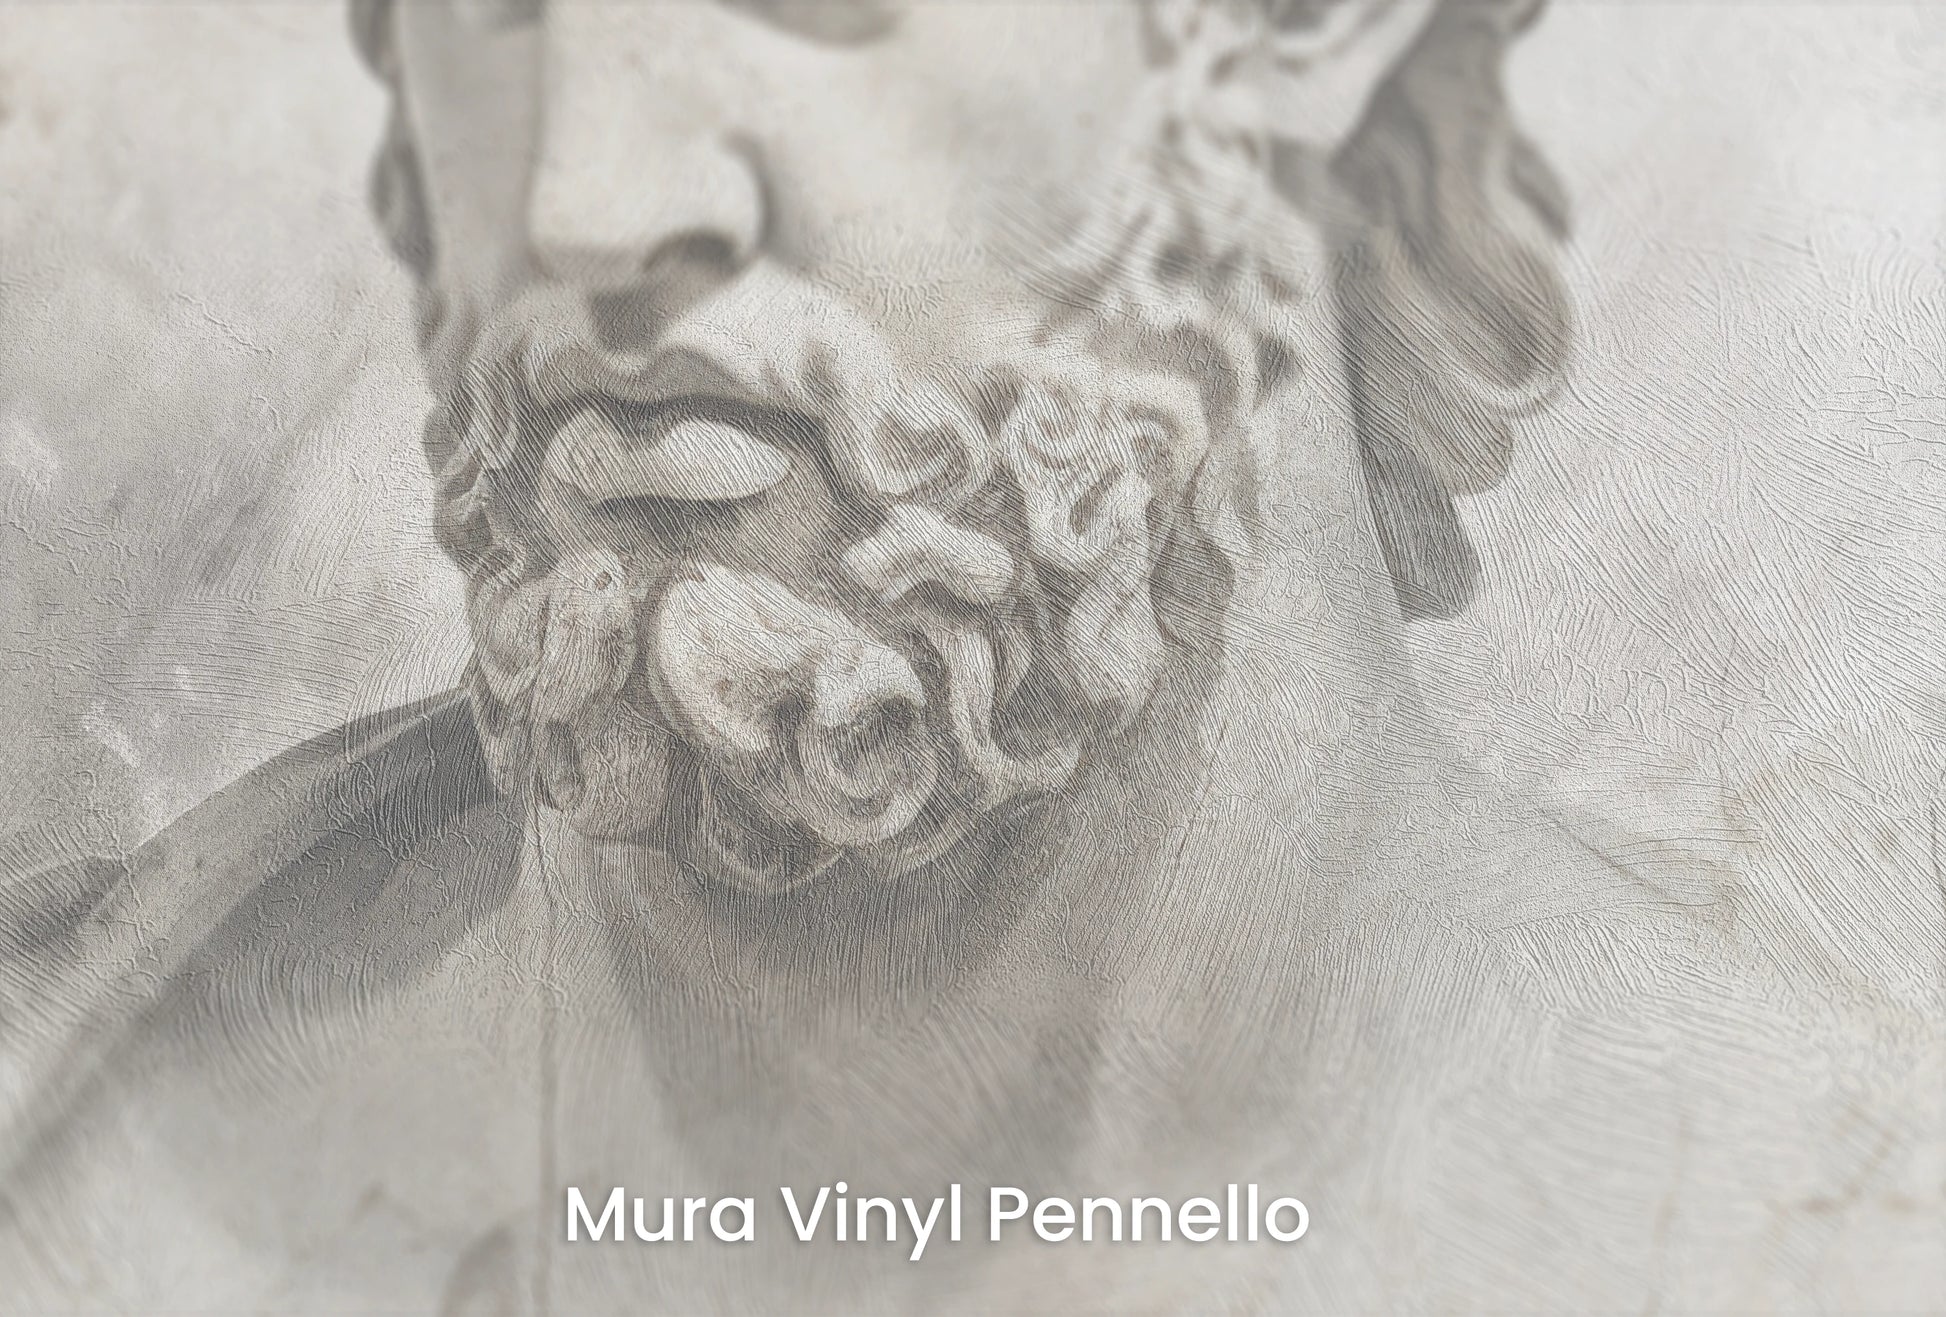 Zbliżenie na artystyczną fototapetę o nazwie Poseidon's Watch na podłożu Mura Vinyl Pennello - faktura pociągnięć pędzla malarskiego.